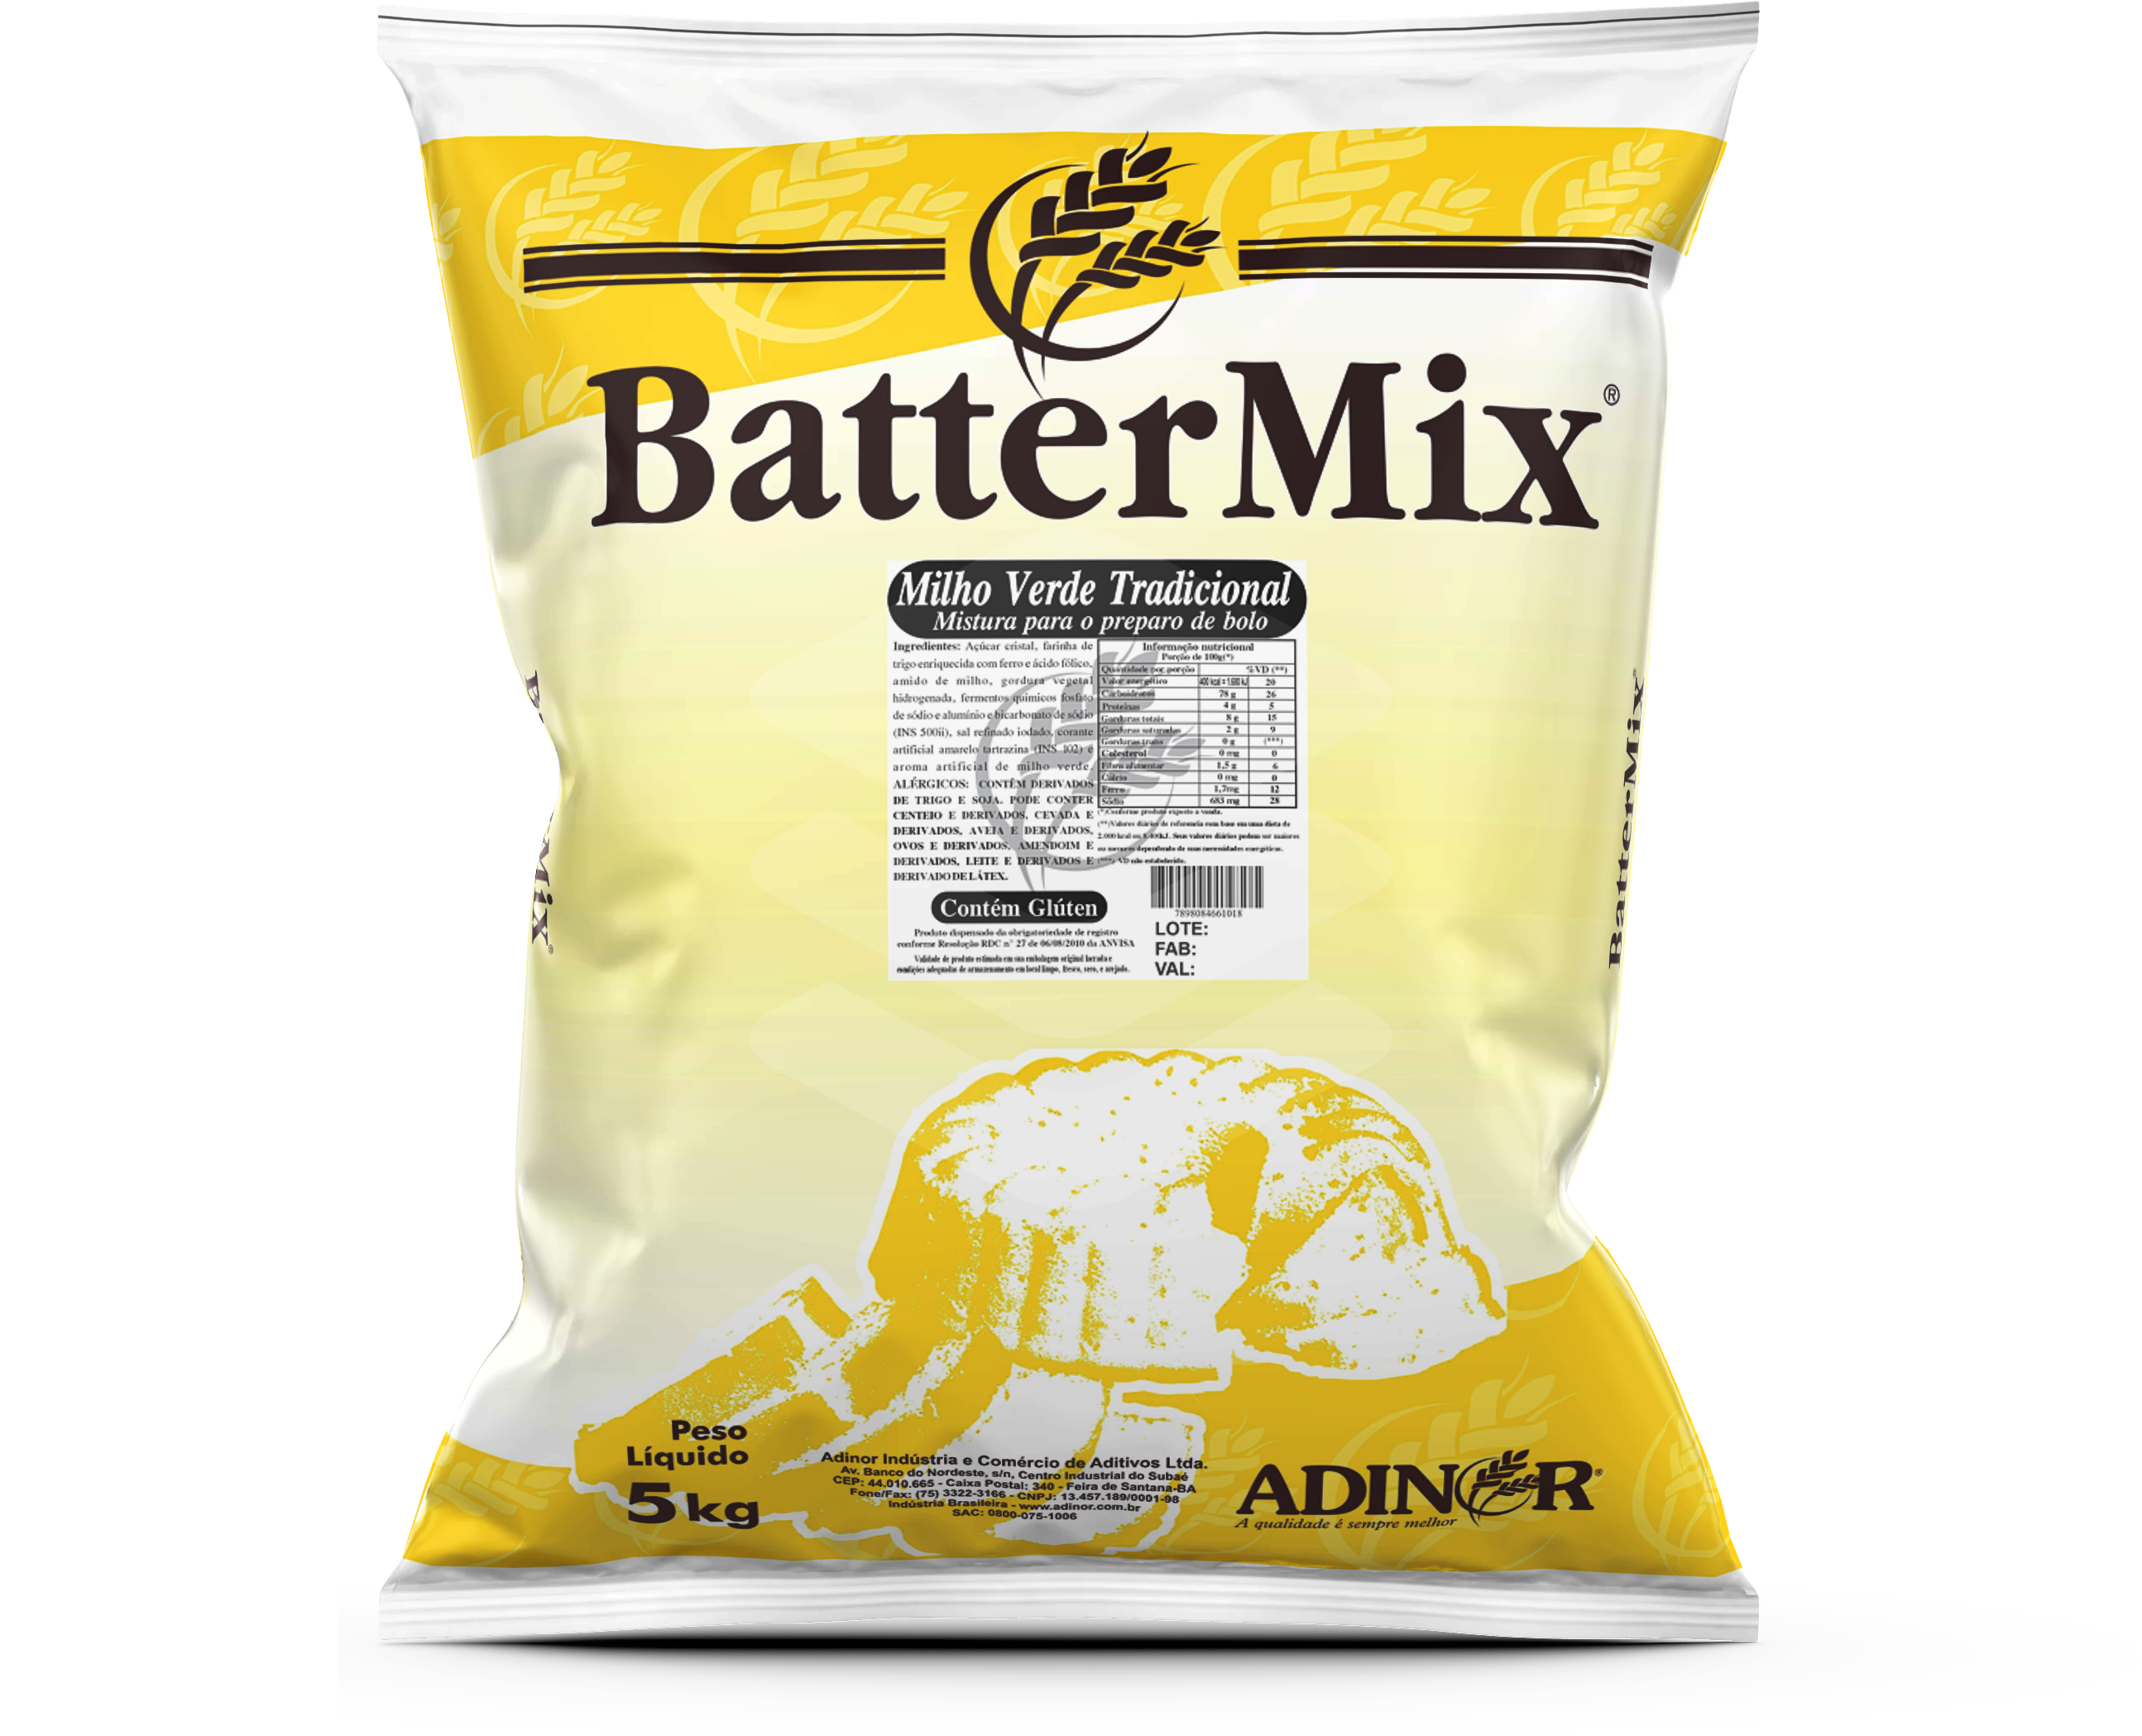 Battermix Milho Verde Tradicional